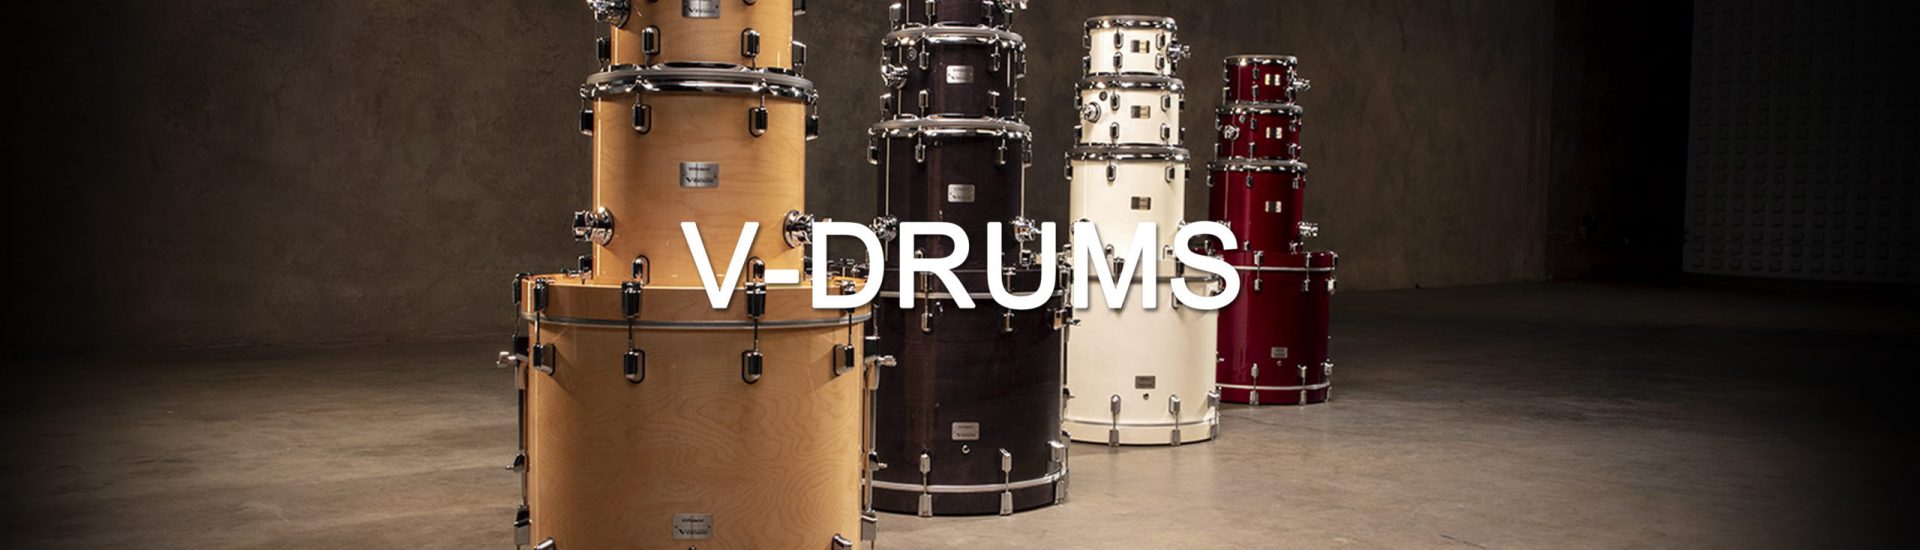 V-Drums NEW Banner 2